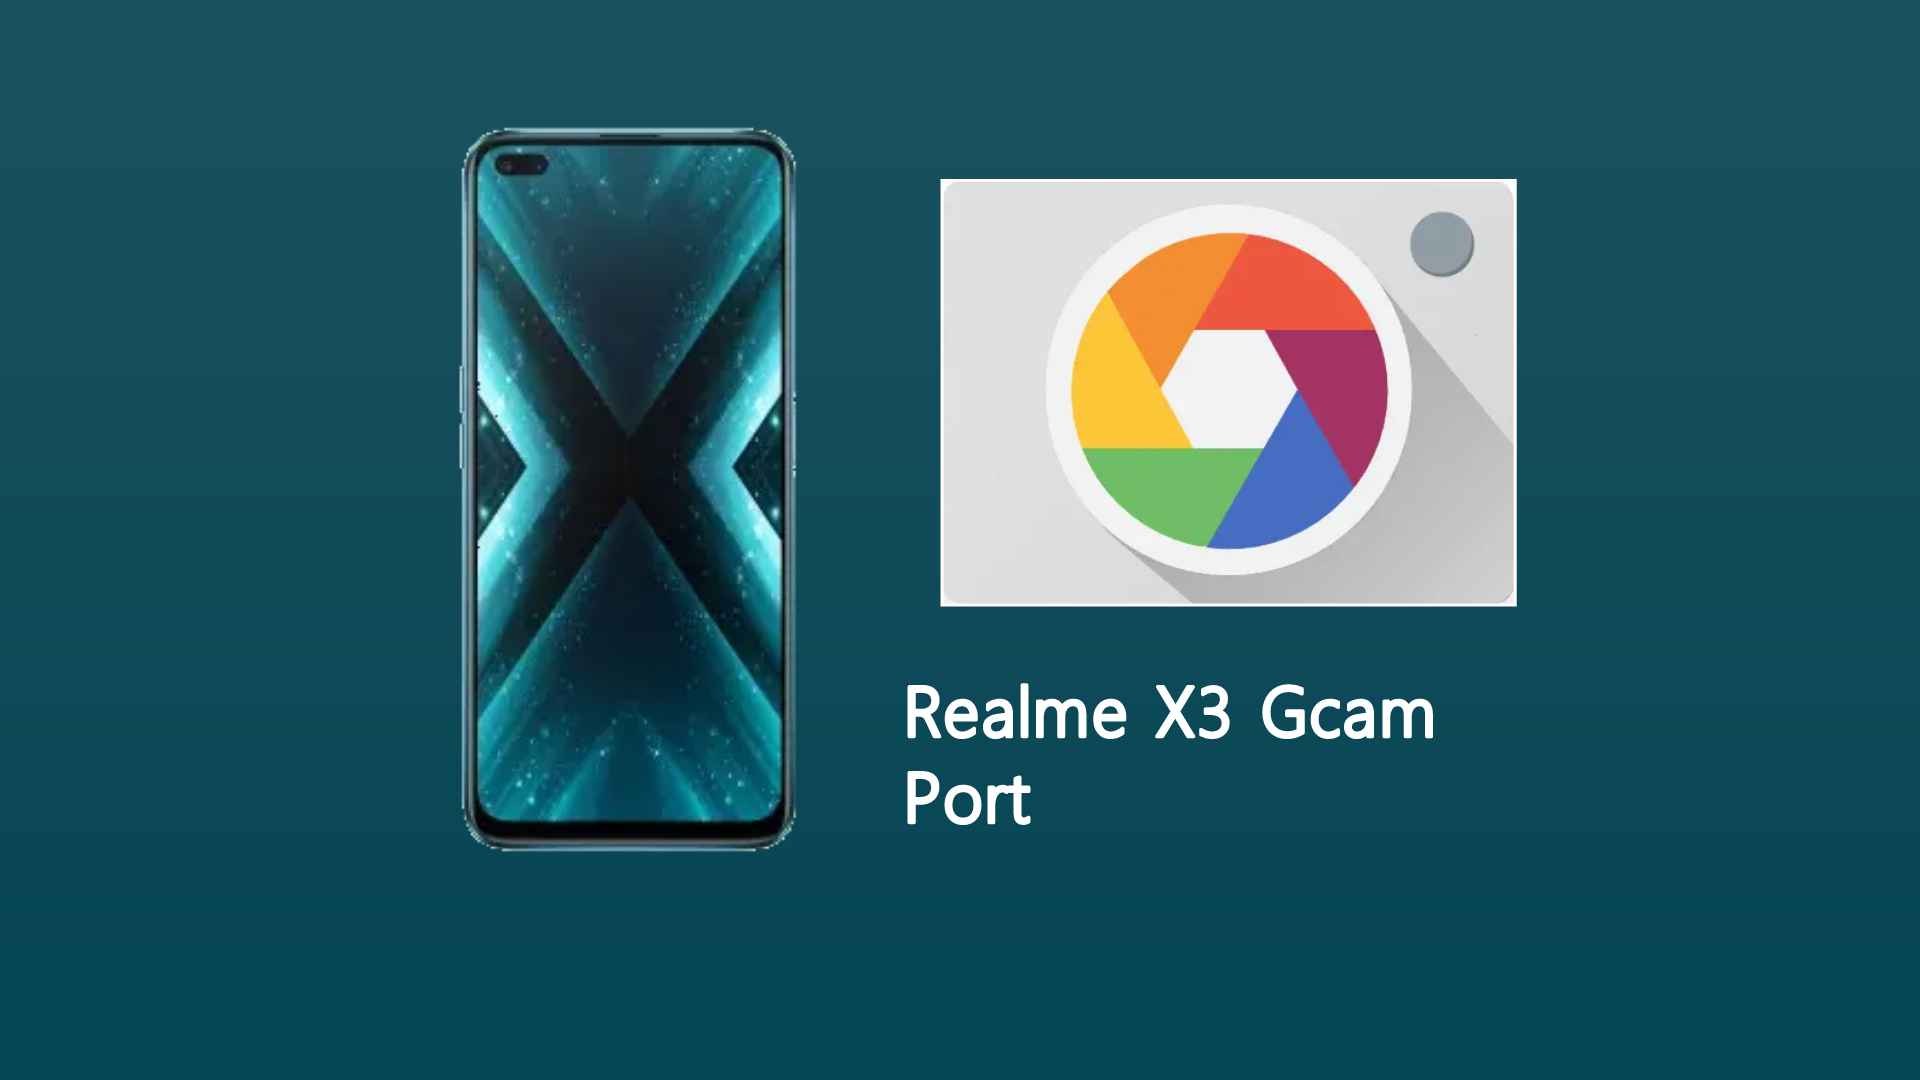 Realme X3 Gcam Port